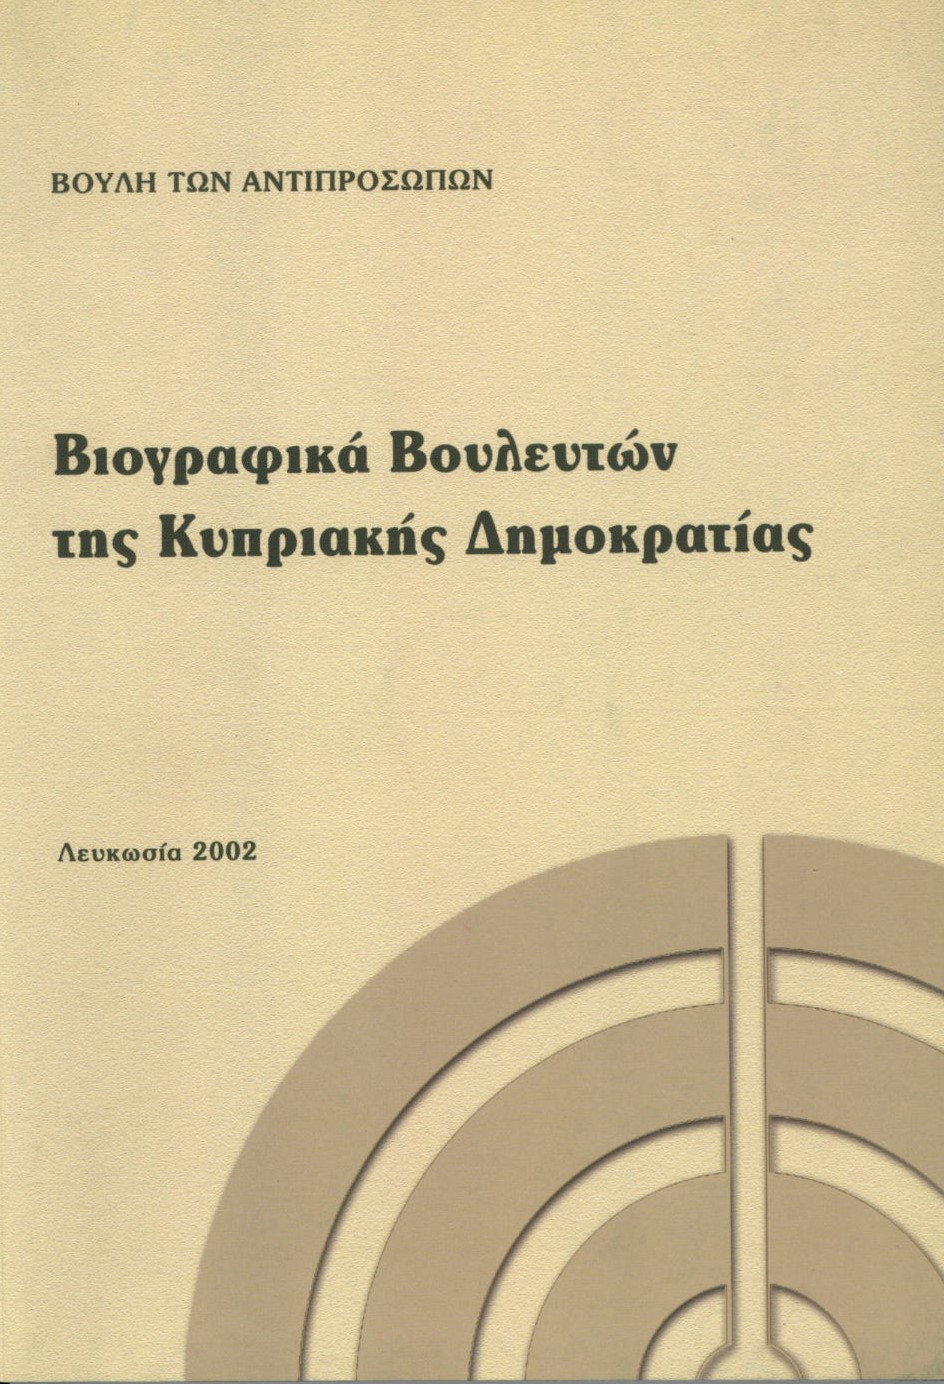 Βιογραφικά των Βουλευτών της Κυπριακής Δημοκρατίας